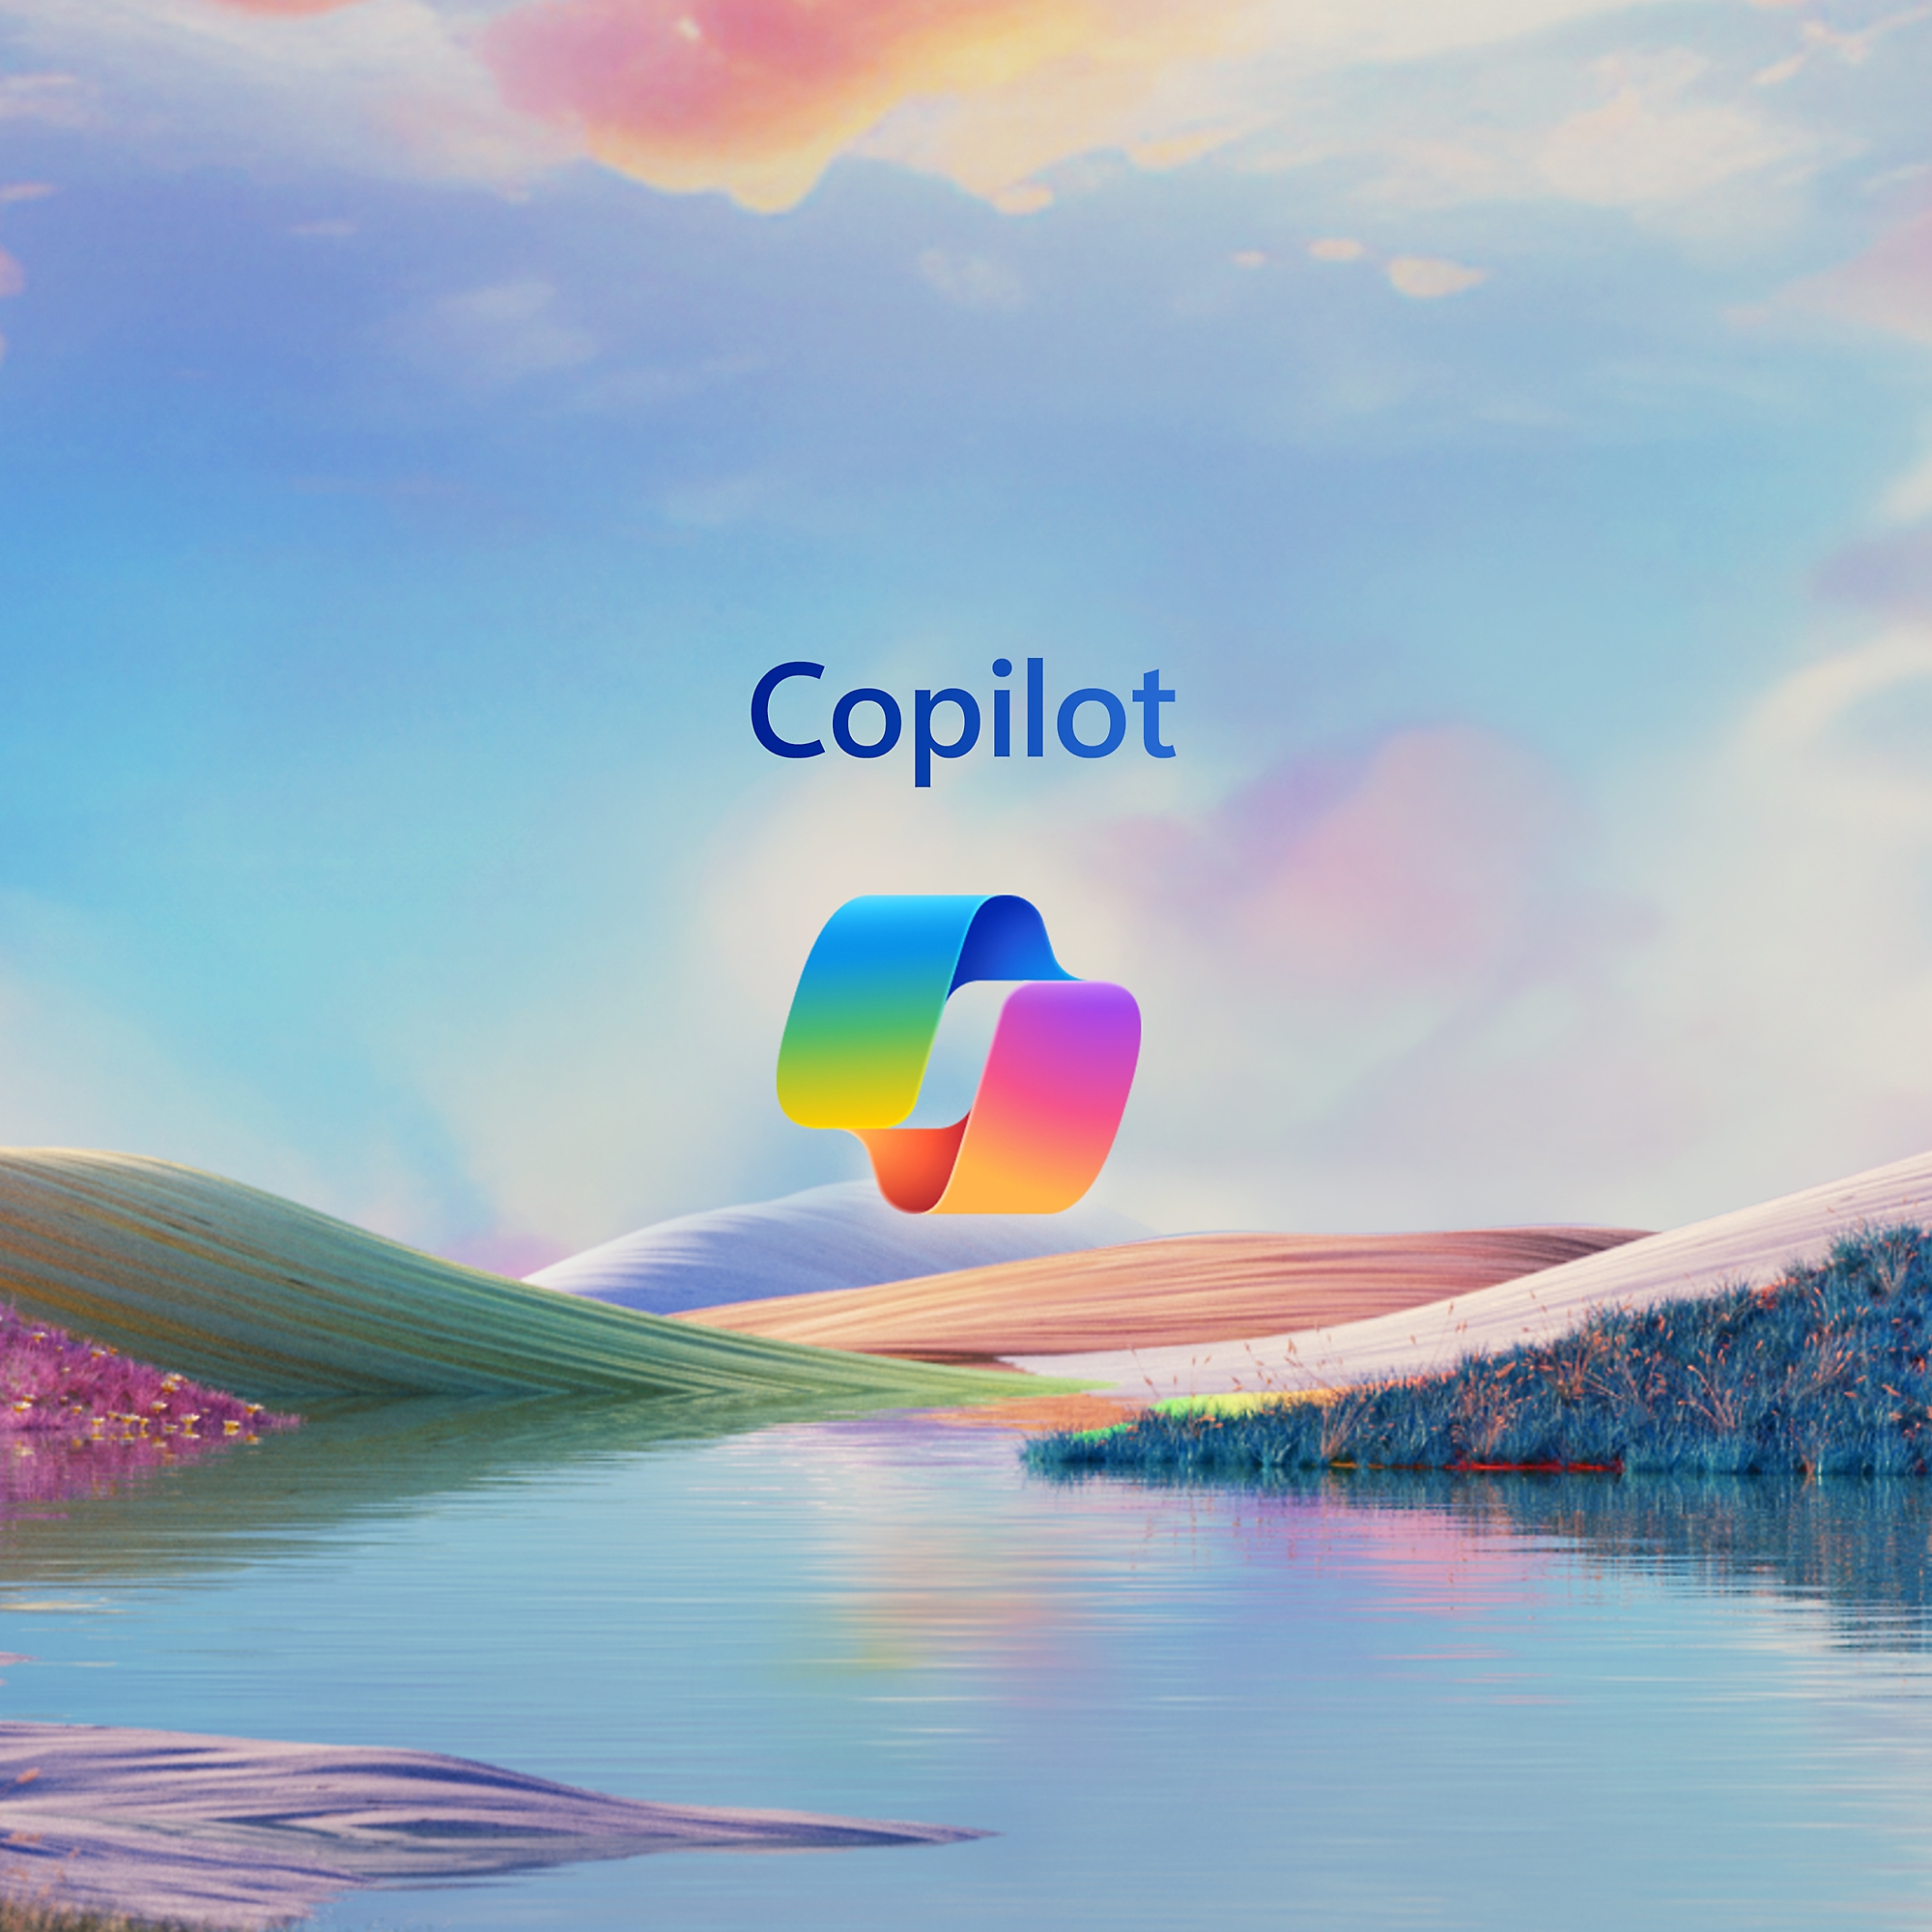 The Copilot logo above a landscape